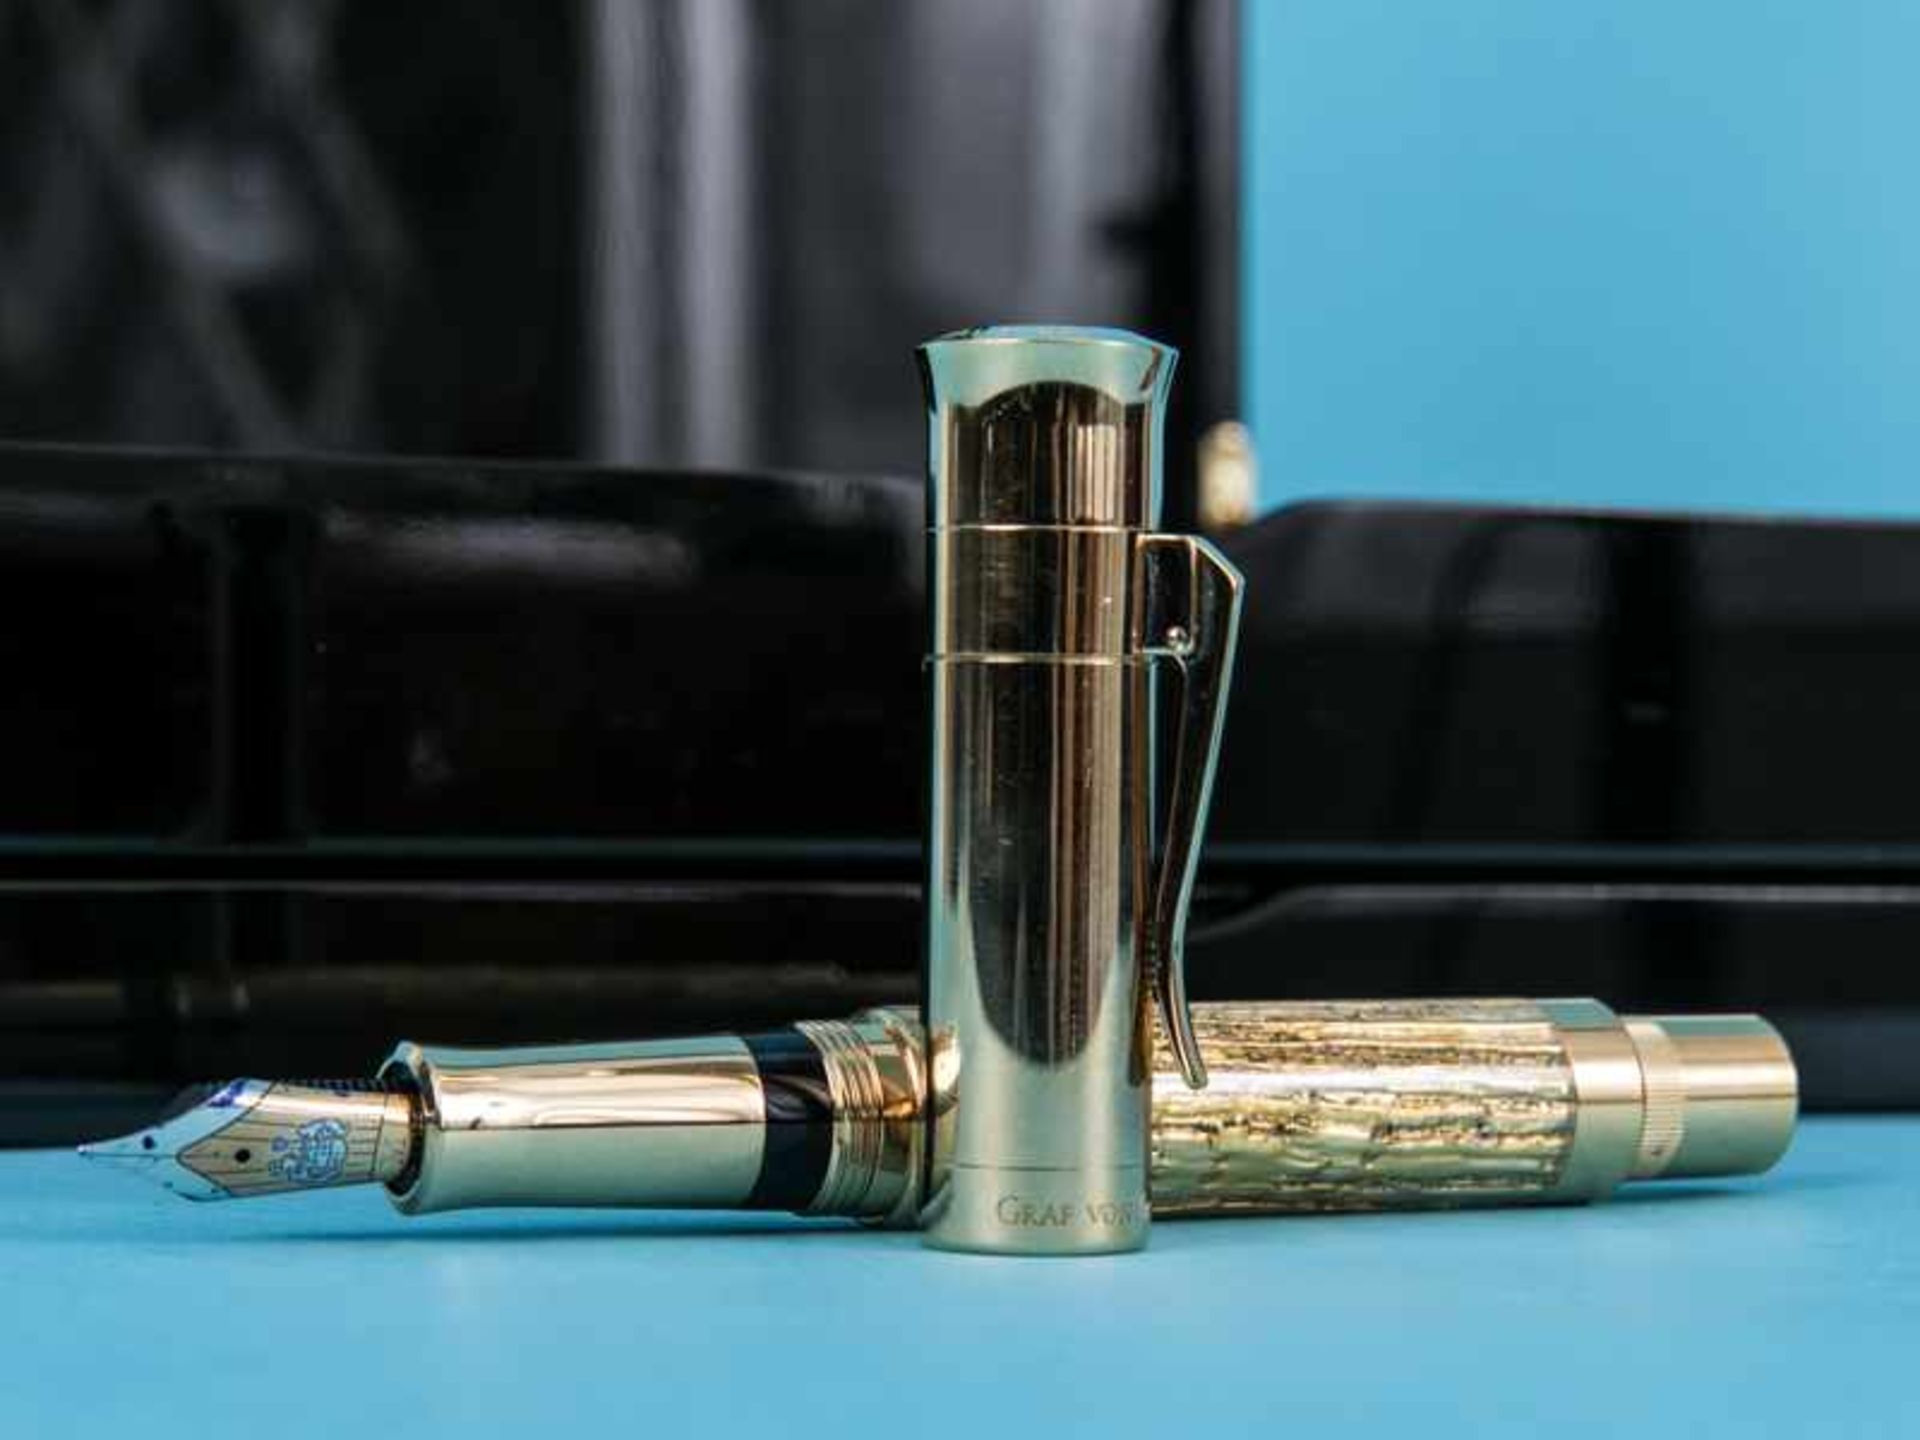 Kolben-Füllfederhalter "Pen of the Year" 2012, Handarbeit aus der Manufaktur Graf von Faber-Castell. - Image 3 of 10